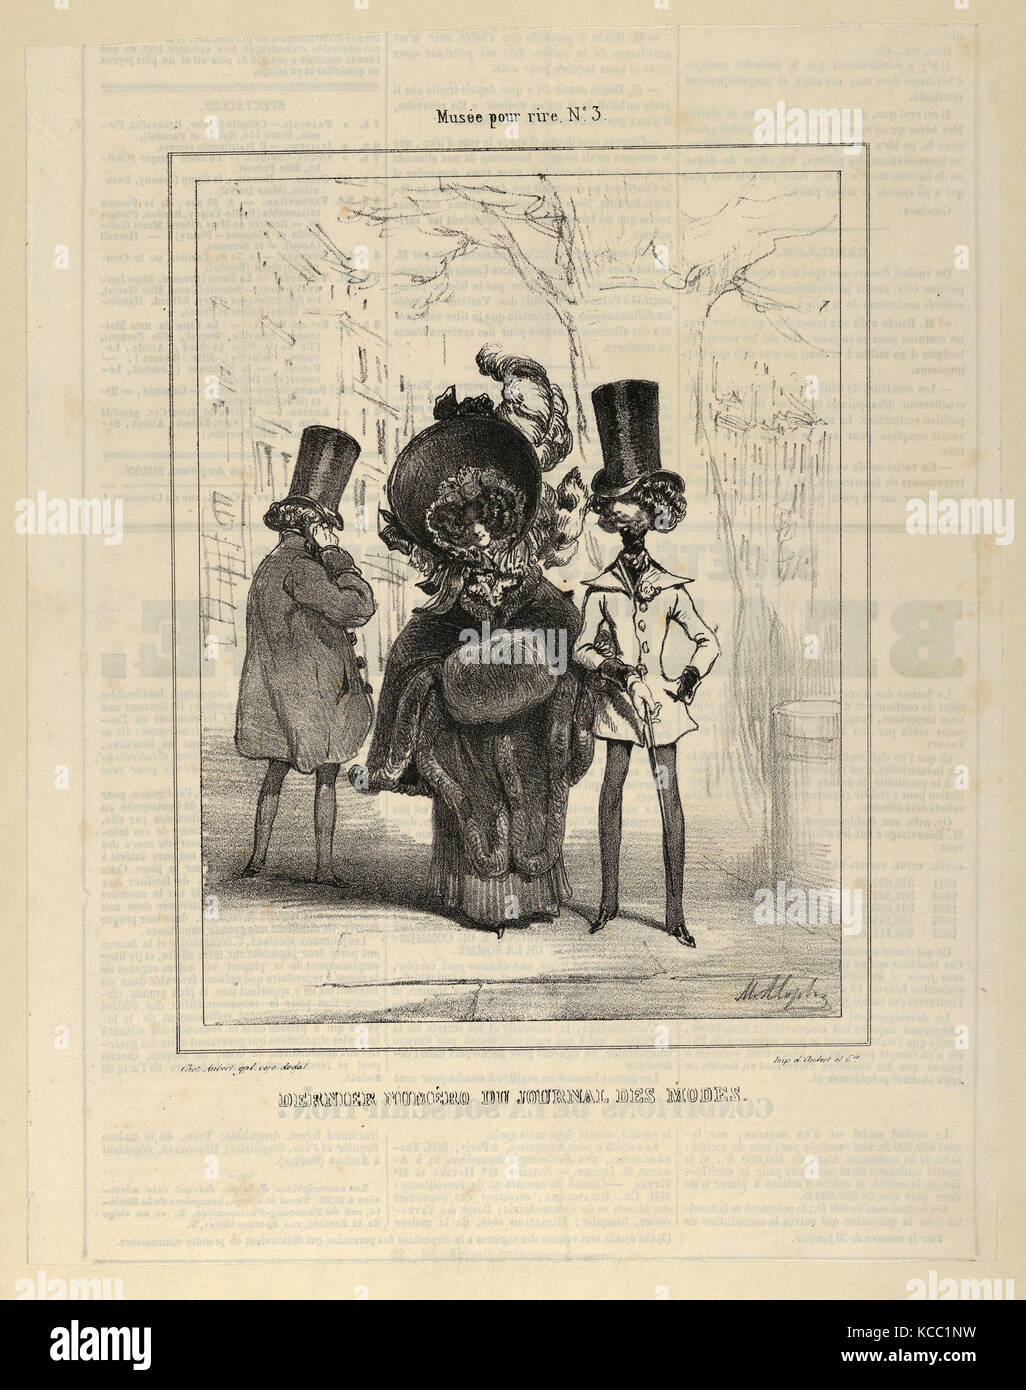 Zeichnungen und Drucke, Drucken, Musée pour rire Nr. 3, letzte numéro du Journal de Modi, Künstler, Marie Alexandre Alophe, Französisch Stockfoto